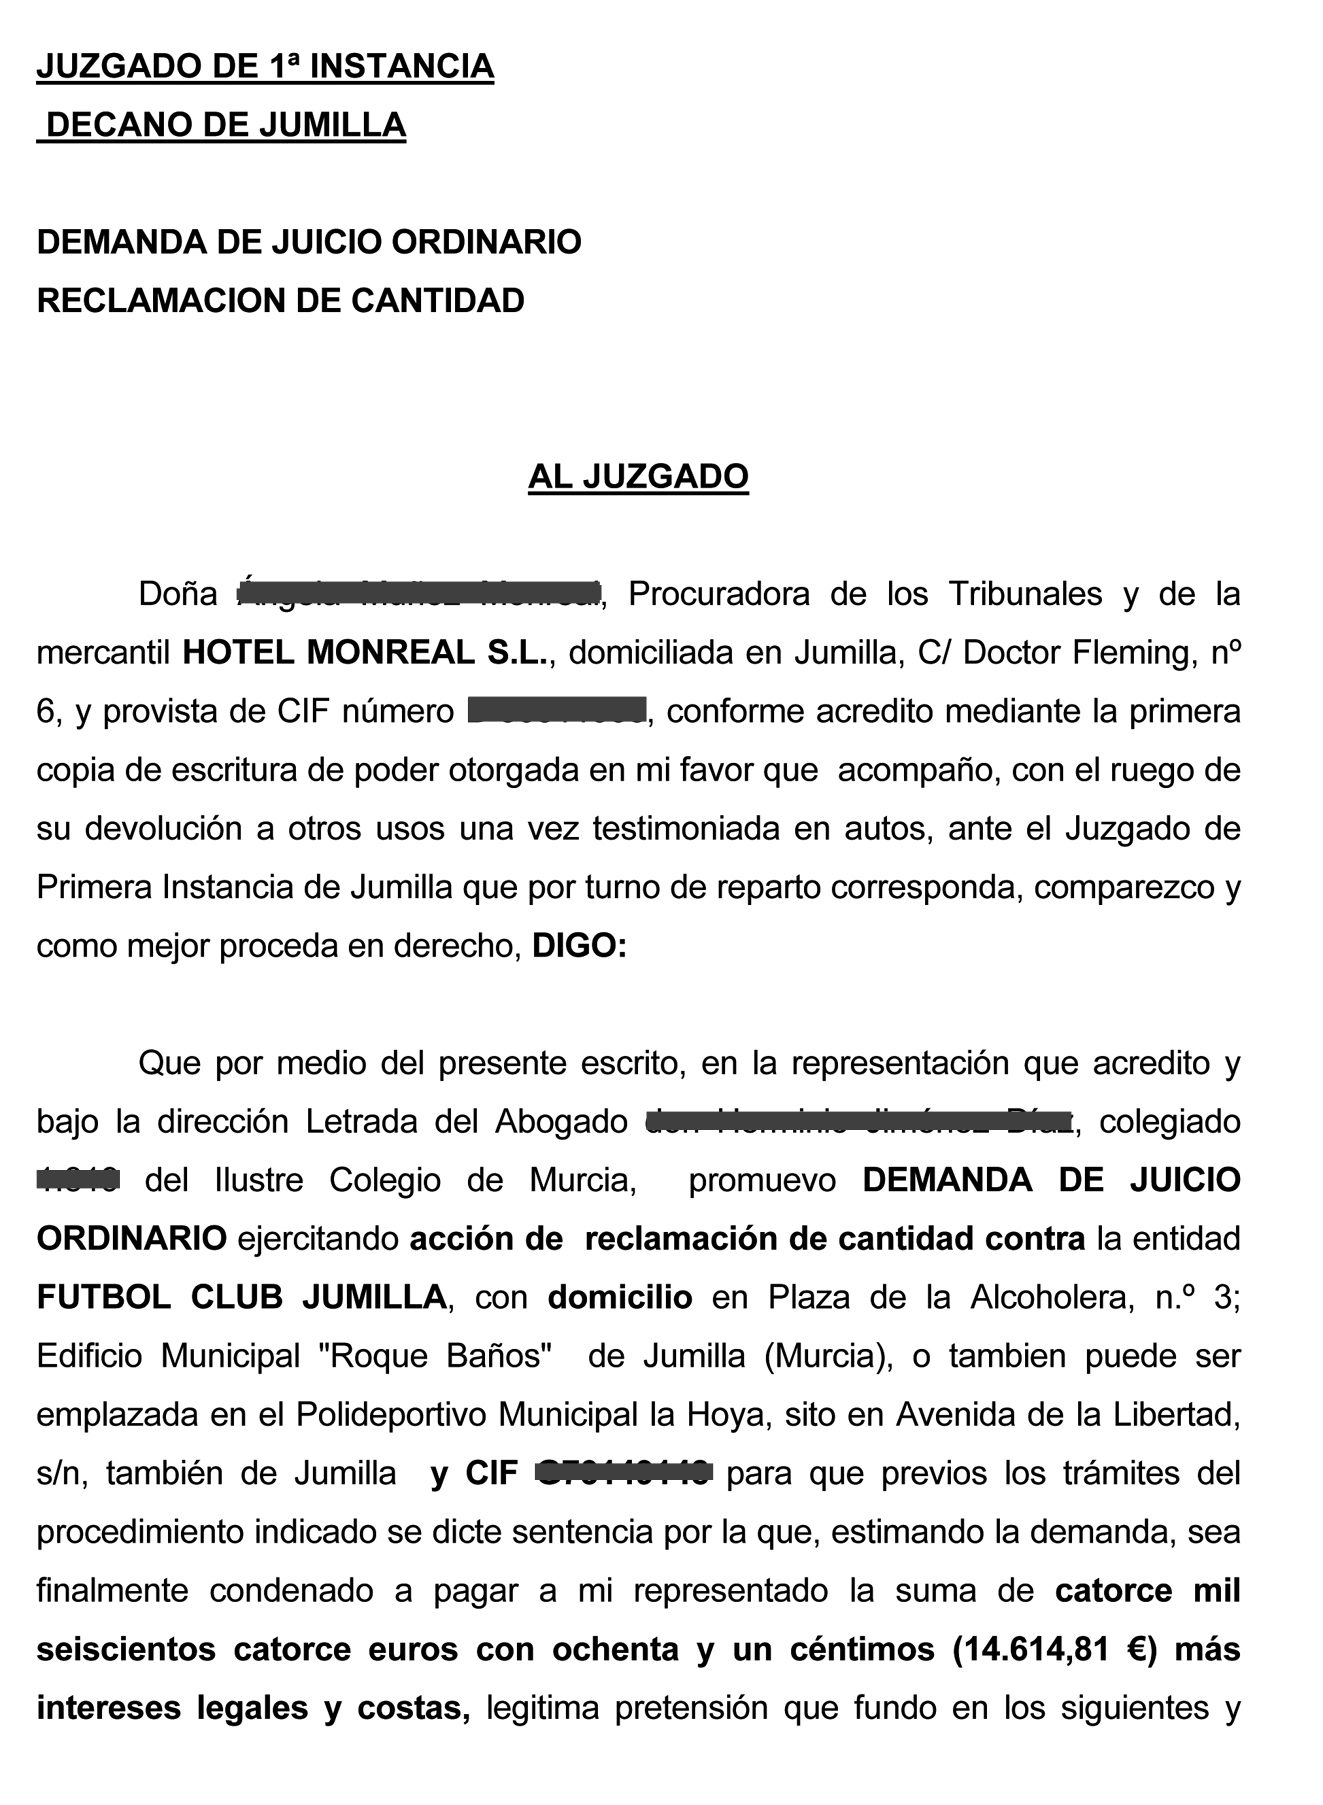 Interpuesta demanda contra el FC Jumilla por el Hotel Monreal